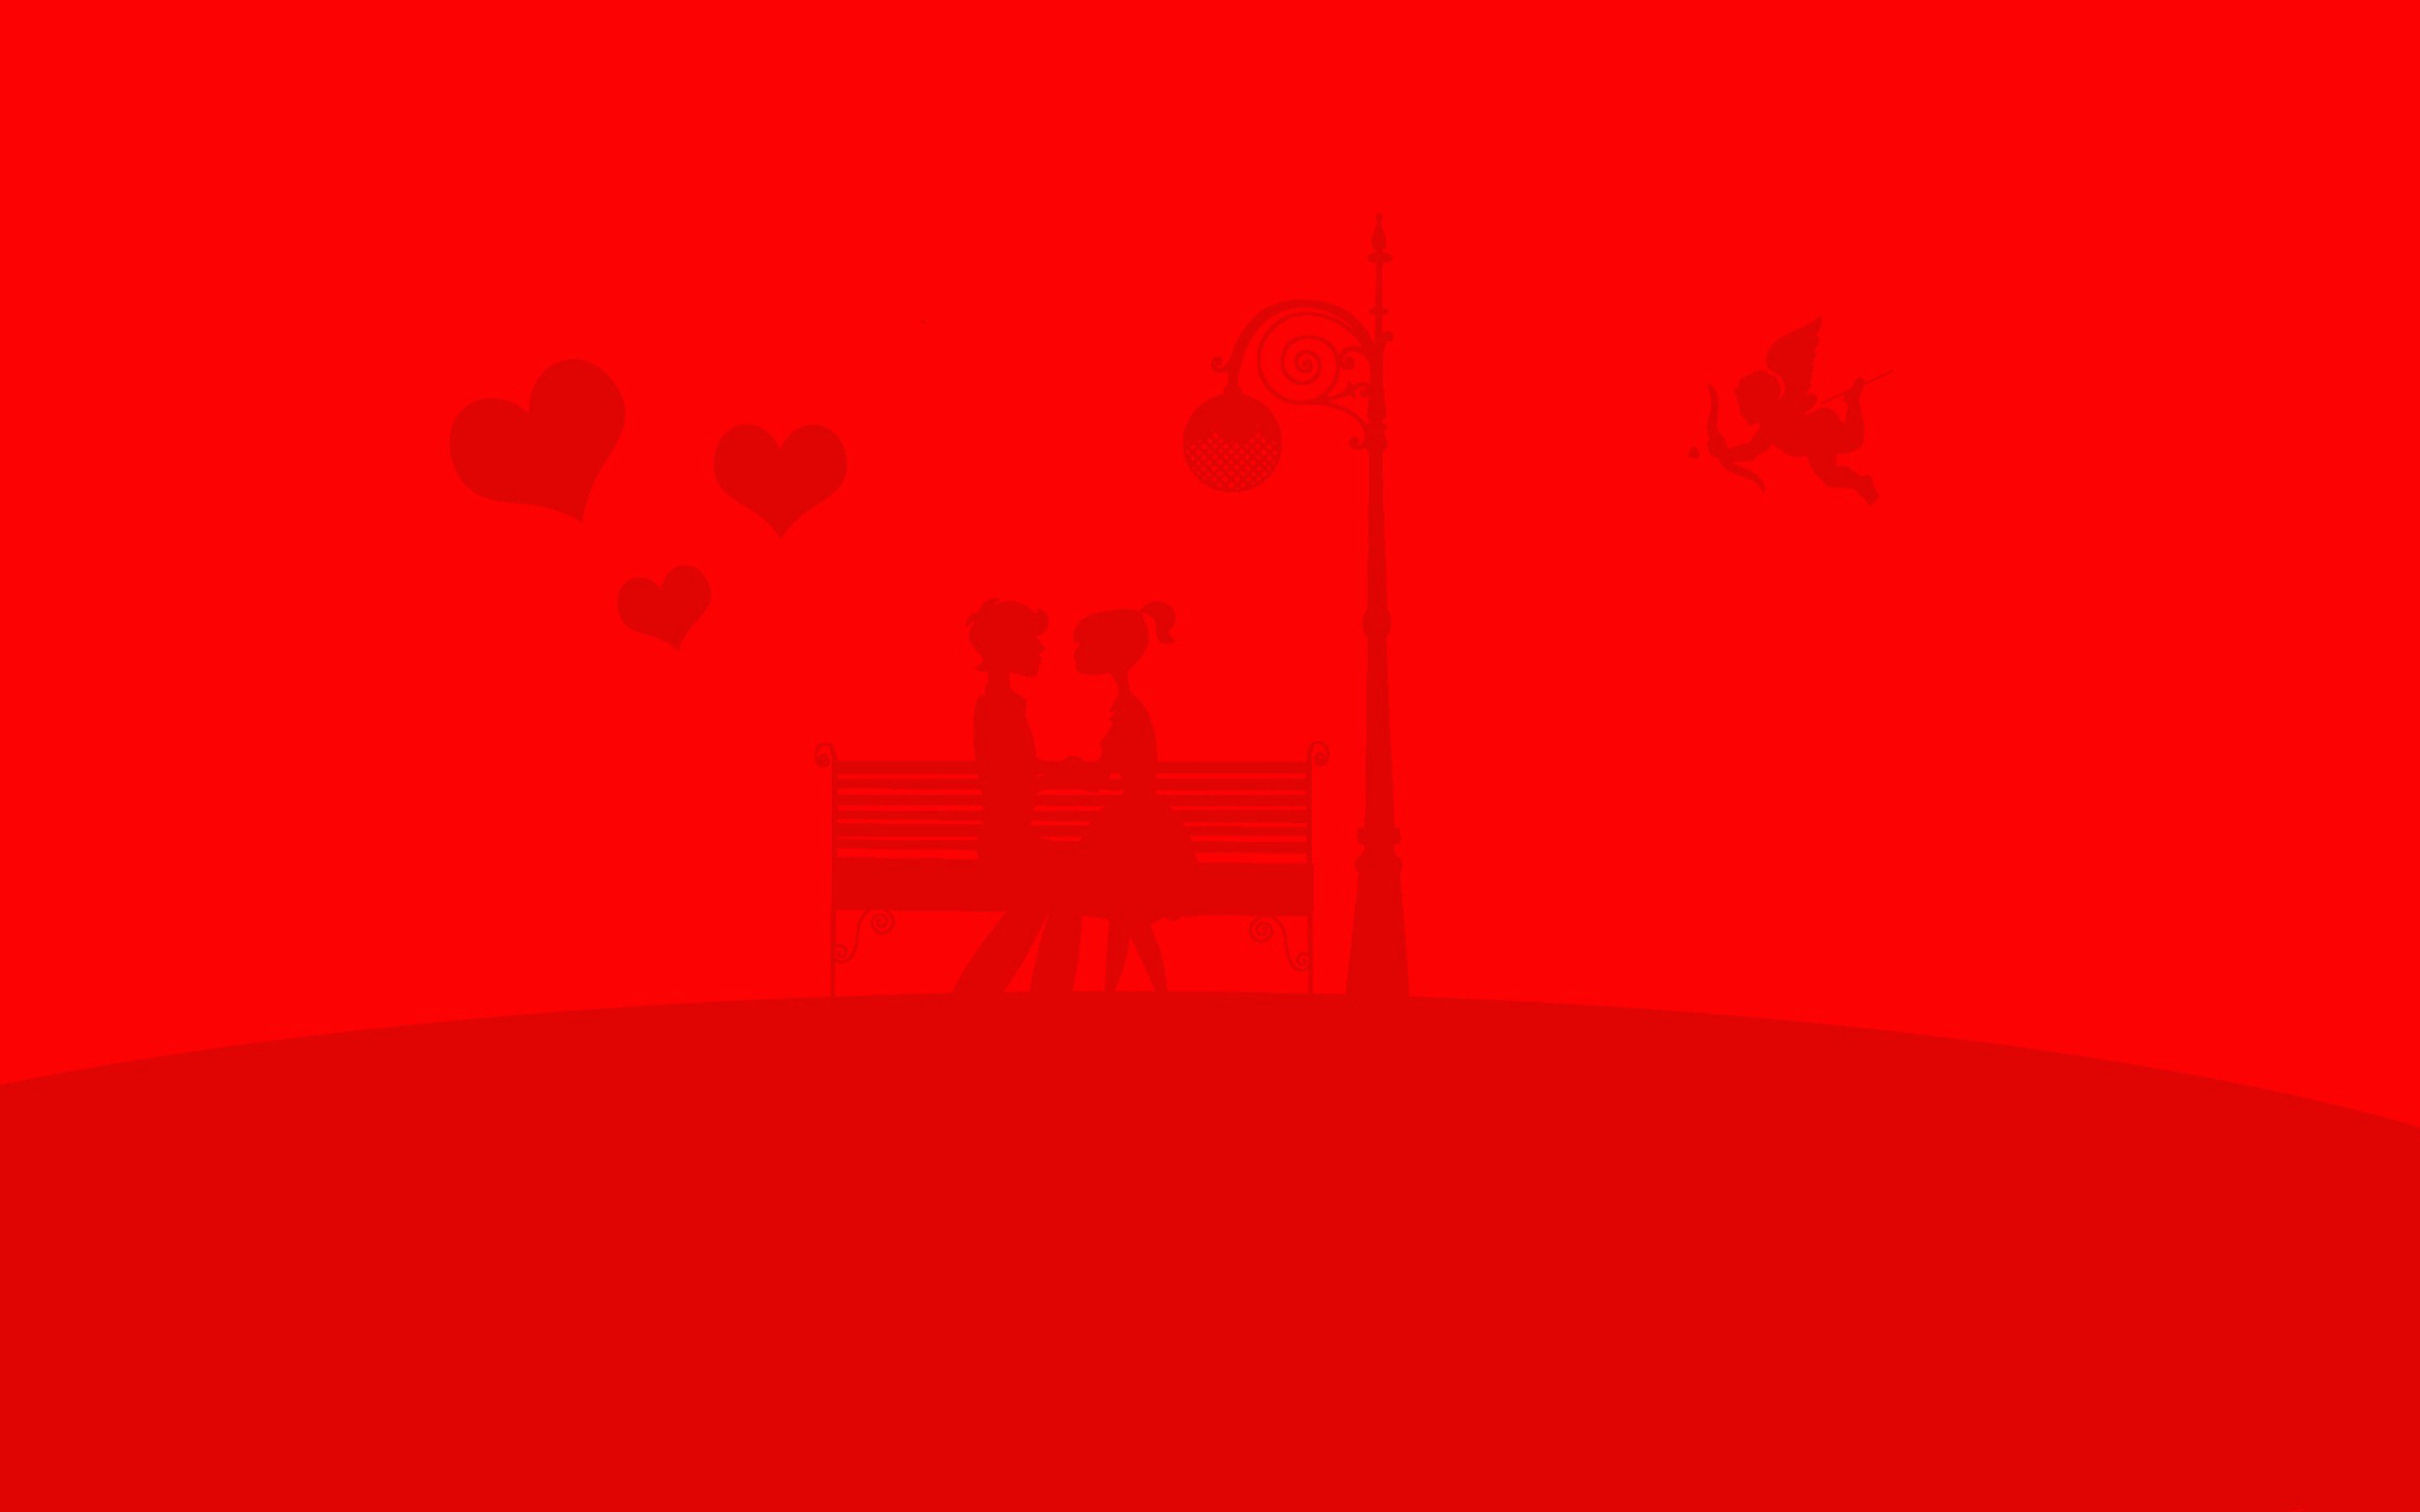 Das Red Valentine Wallpaper 2560x1600